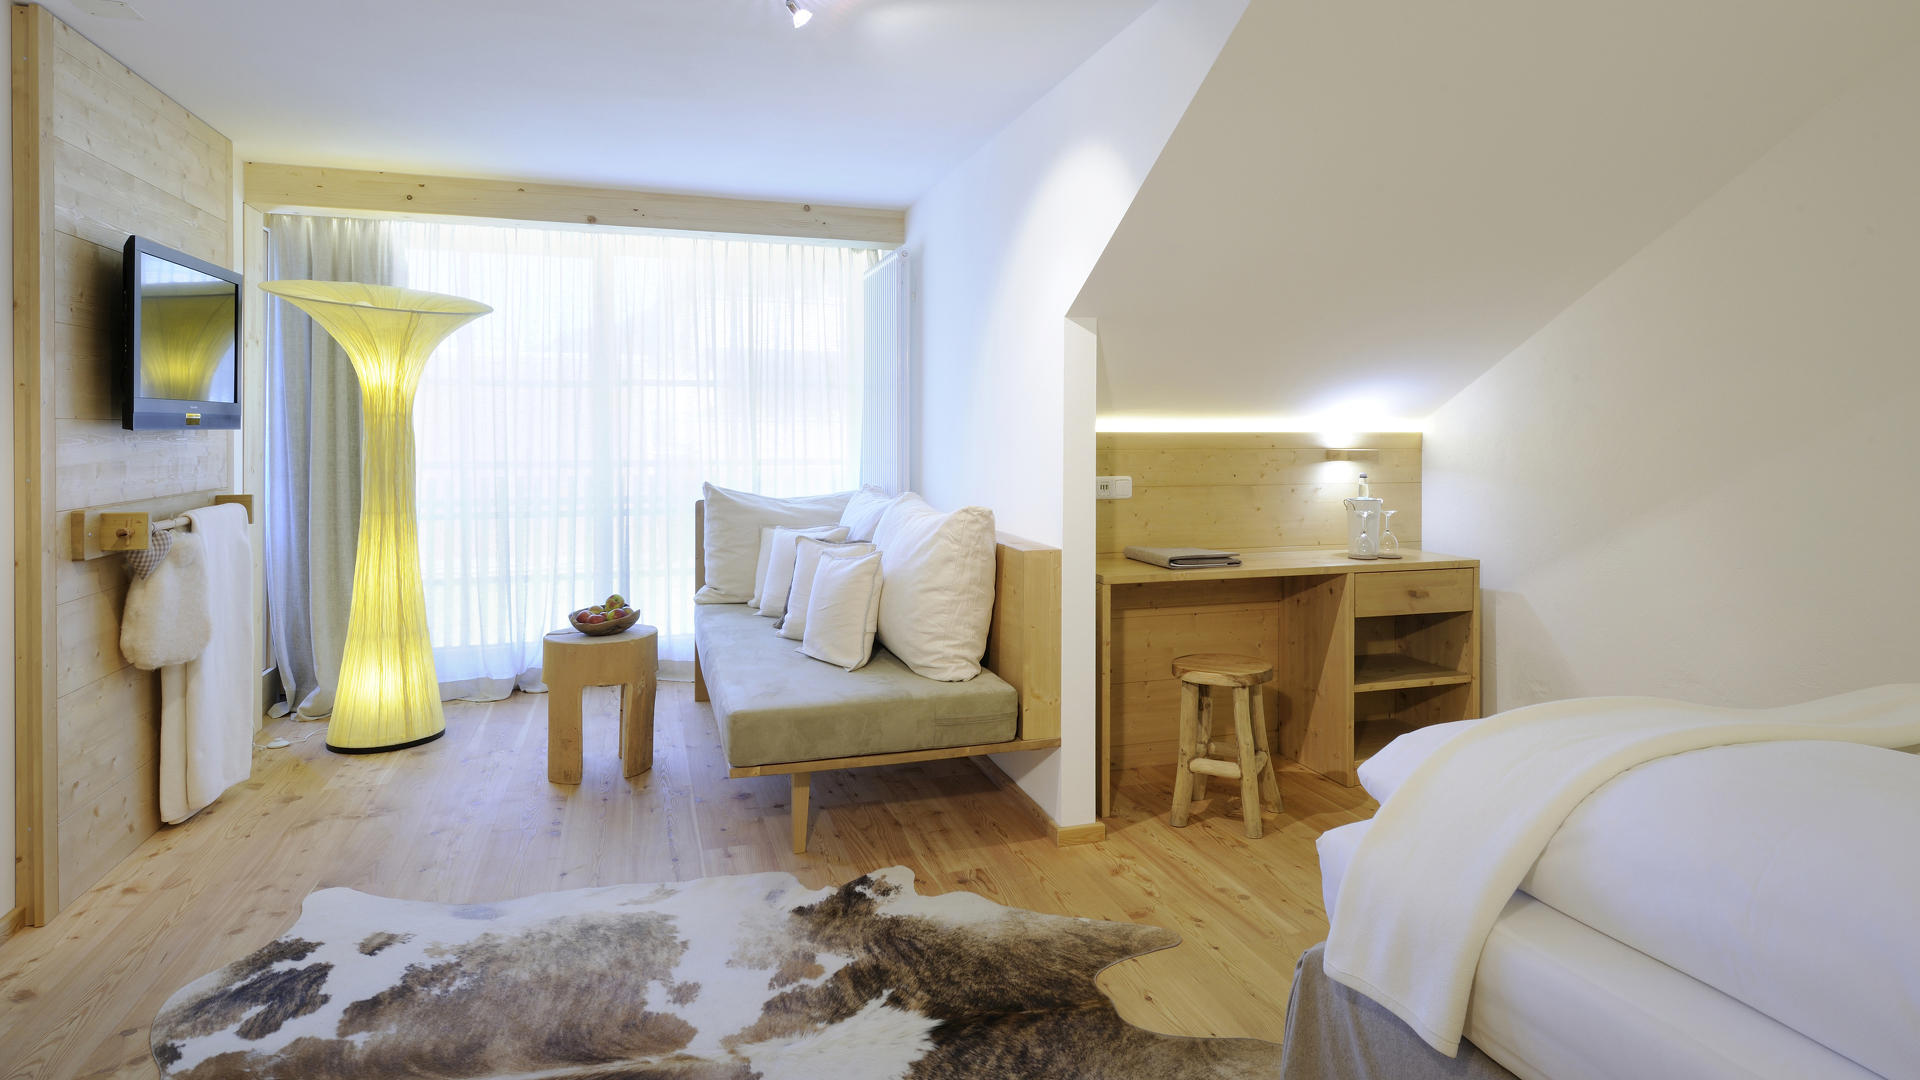 Zimmer mit großem Wohnbereich und Schlafzimmer für die perfekte Auszeit in den Allgäuer Alpen.